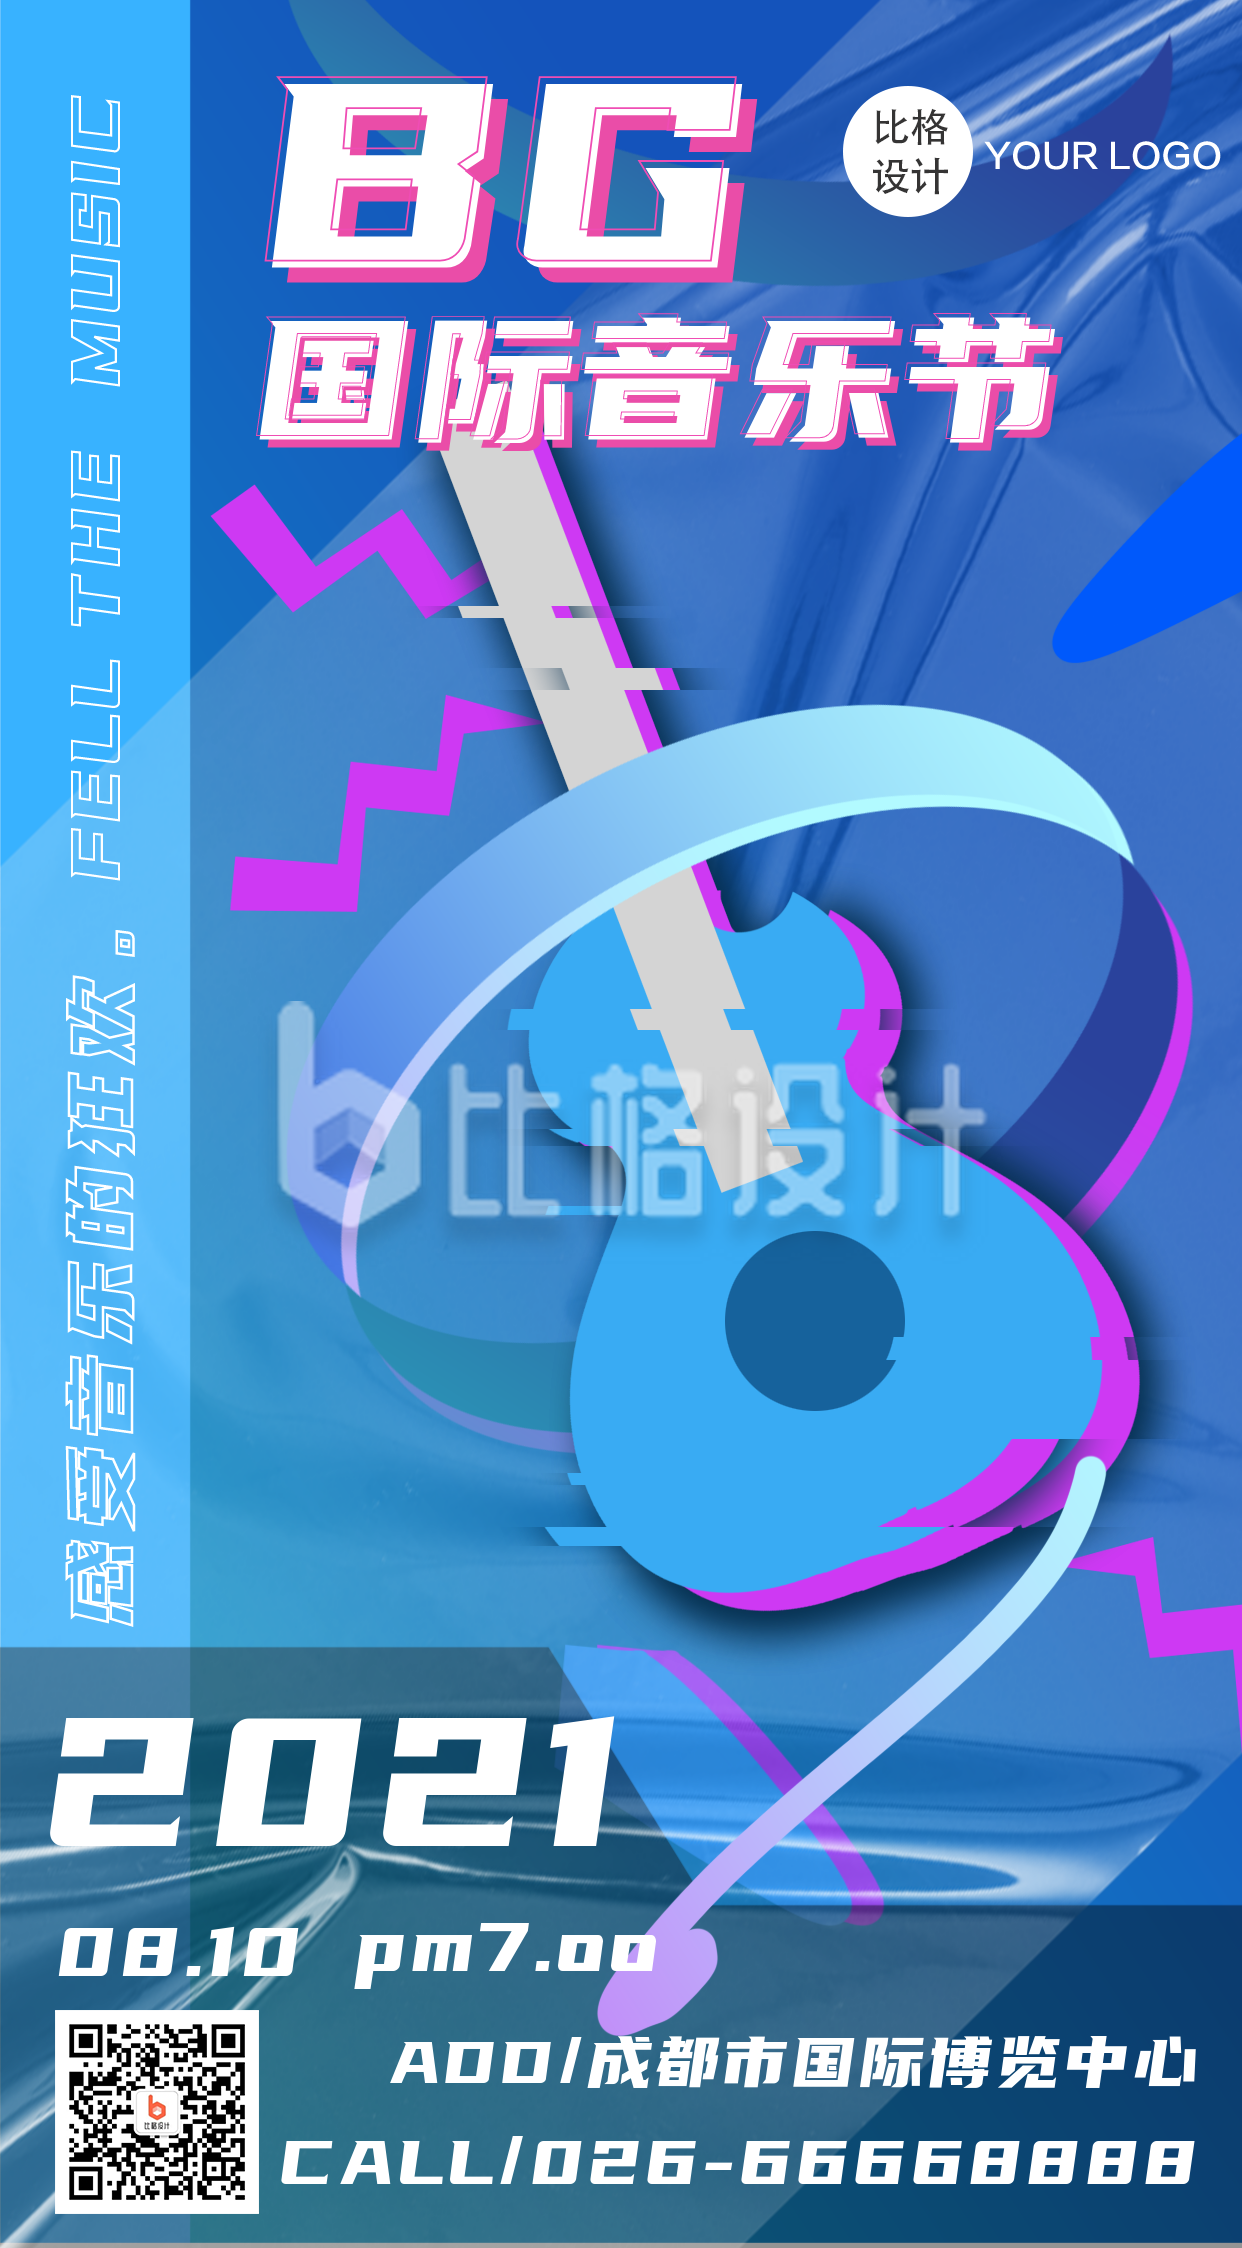 音乐节活动宣传炫酷手绘手机海报